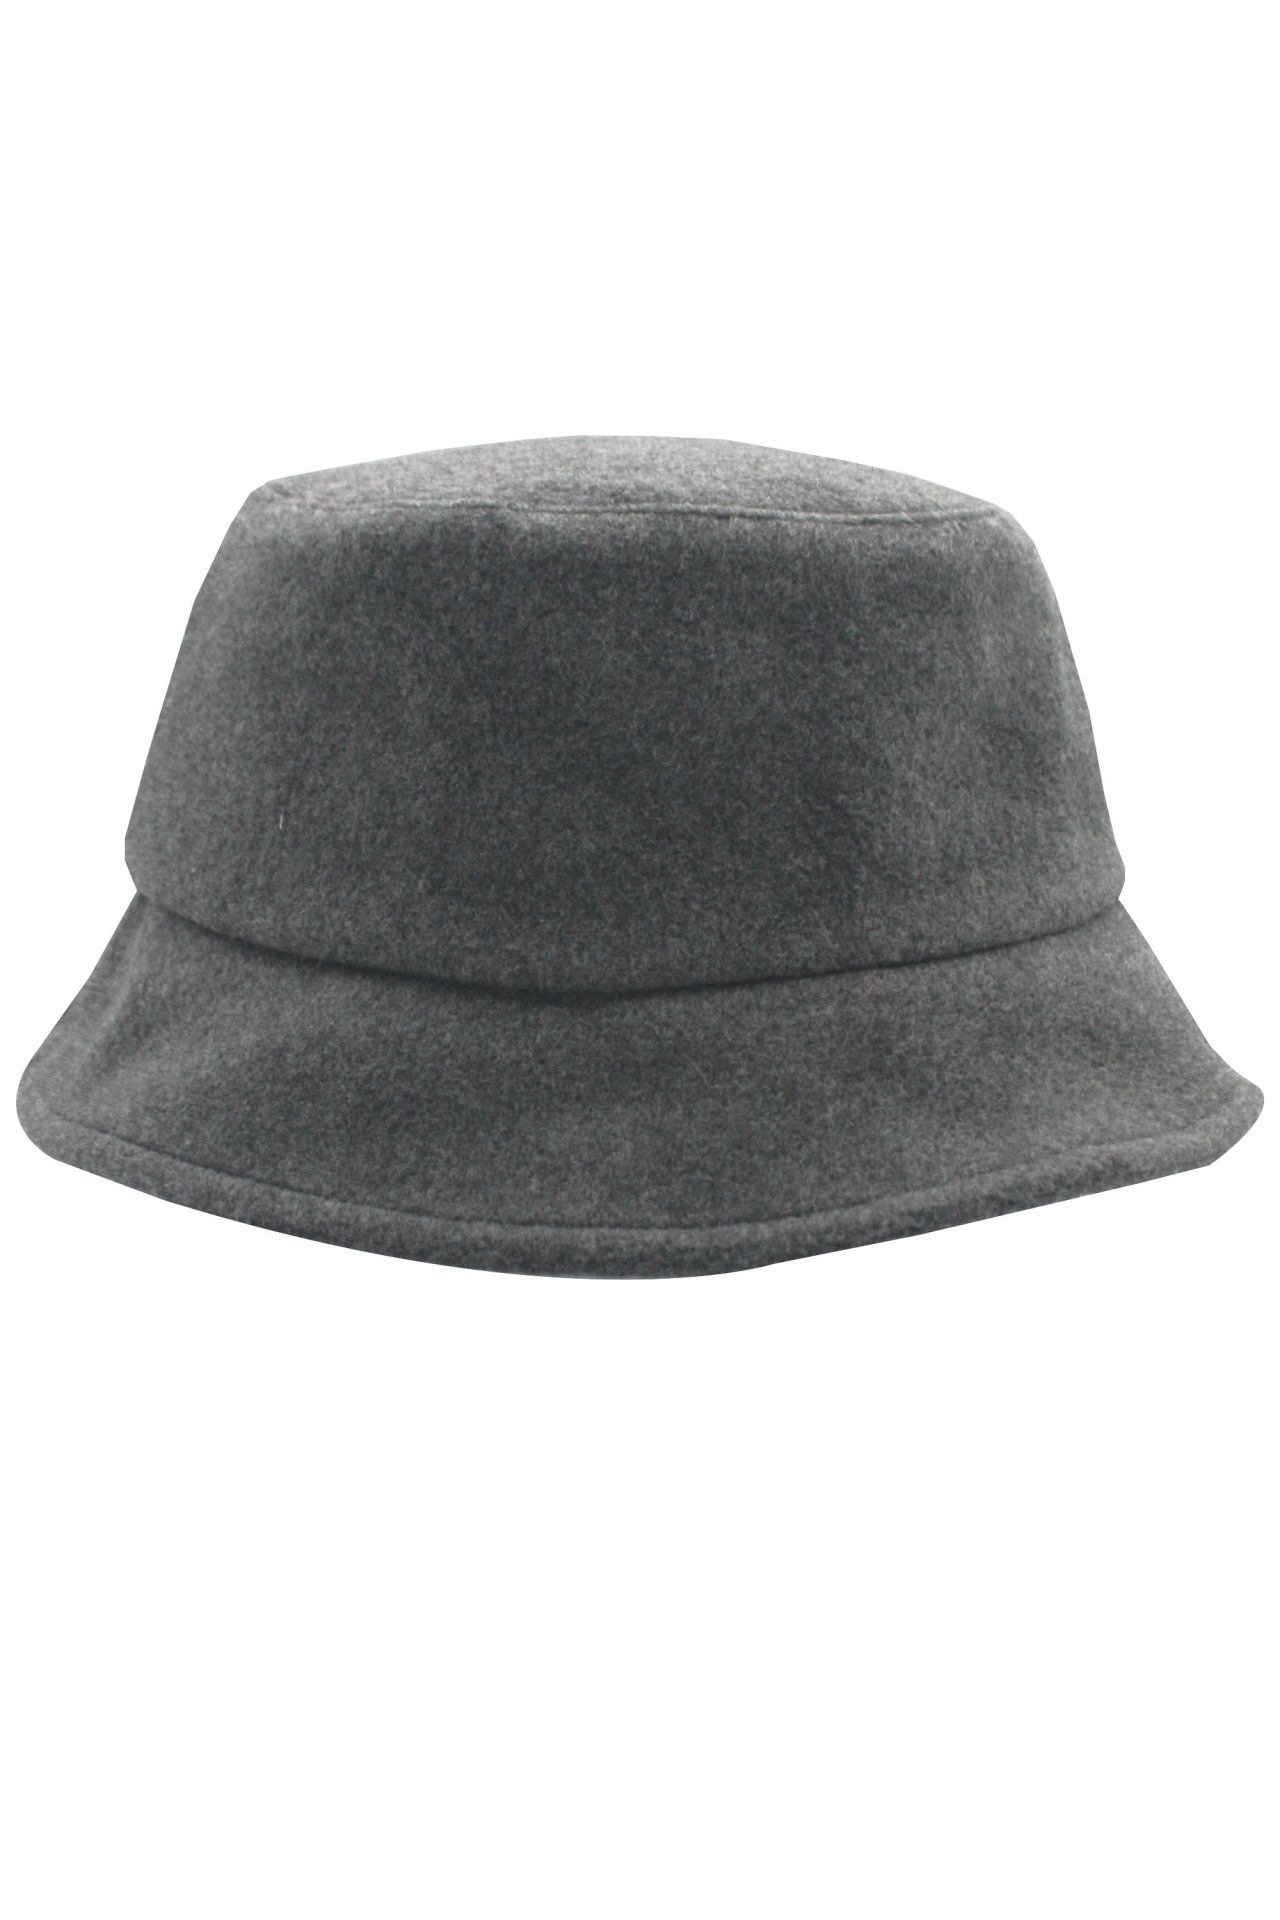 Kışlık Kadın Bucket Şapka Kova Şapka